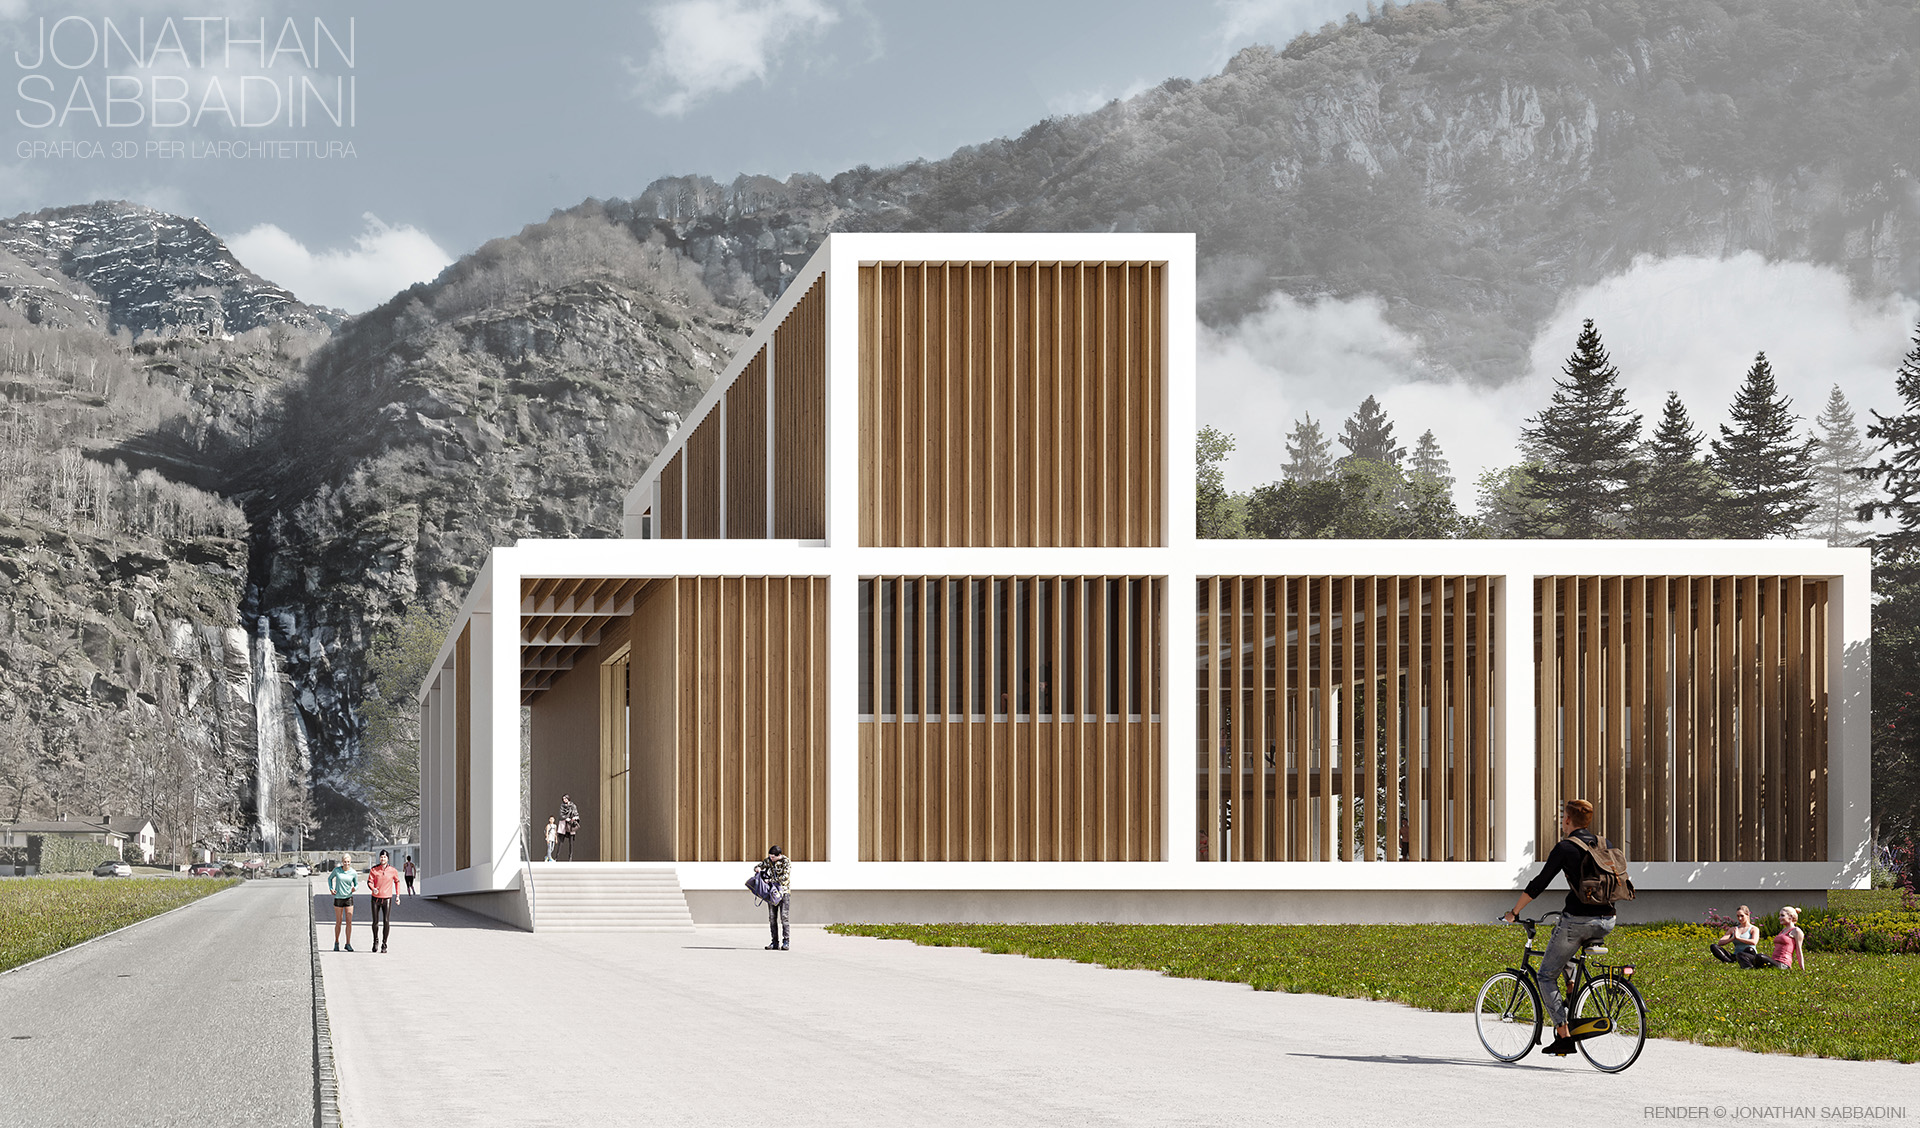 Centro Ricreativo concorso progetto Fiorini Architetti Bellinzona - render Jonathan Sabbadini